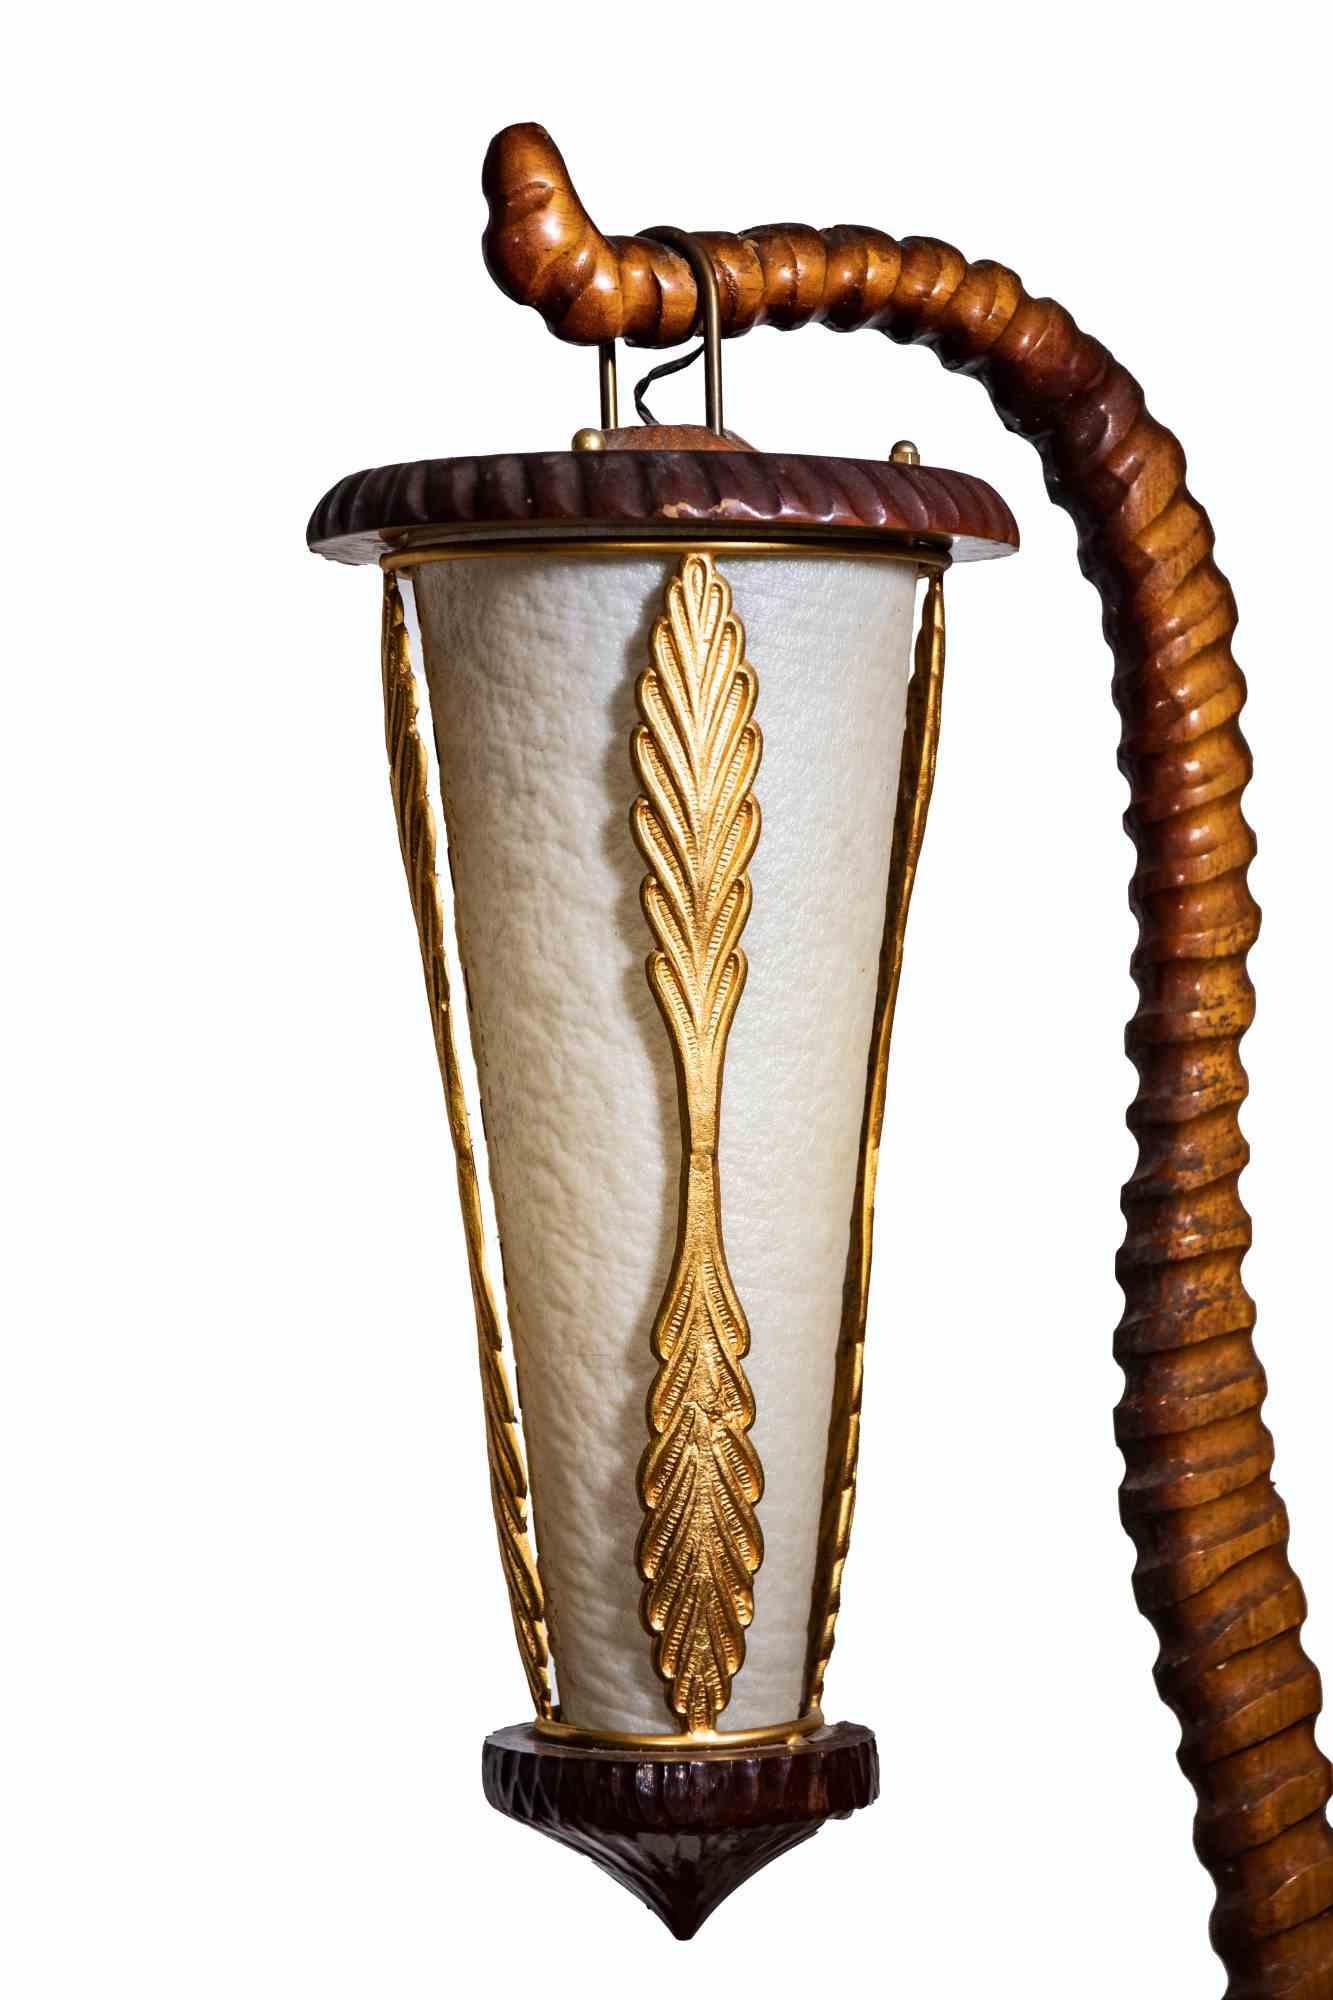 La lampe italienne Aldo Tura Mid-Century Modern est une lampe au design original réalisée par Aldo Tura dans les années 1950.

Un lampadaire unique en bois sculpté avec un abat-jour en parchemin. La lampe comporte une étagère en bois avec un